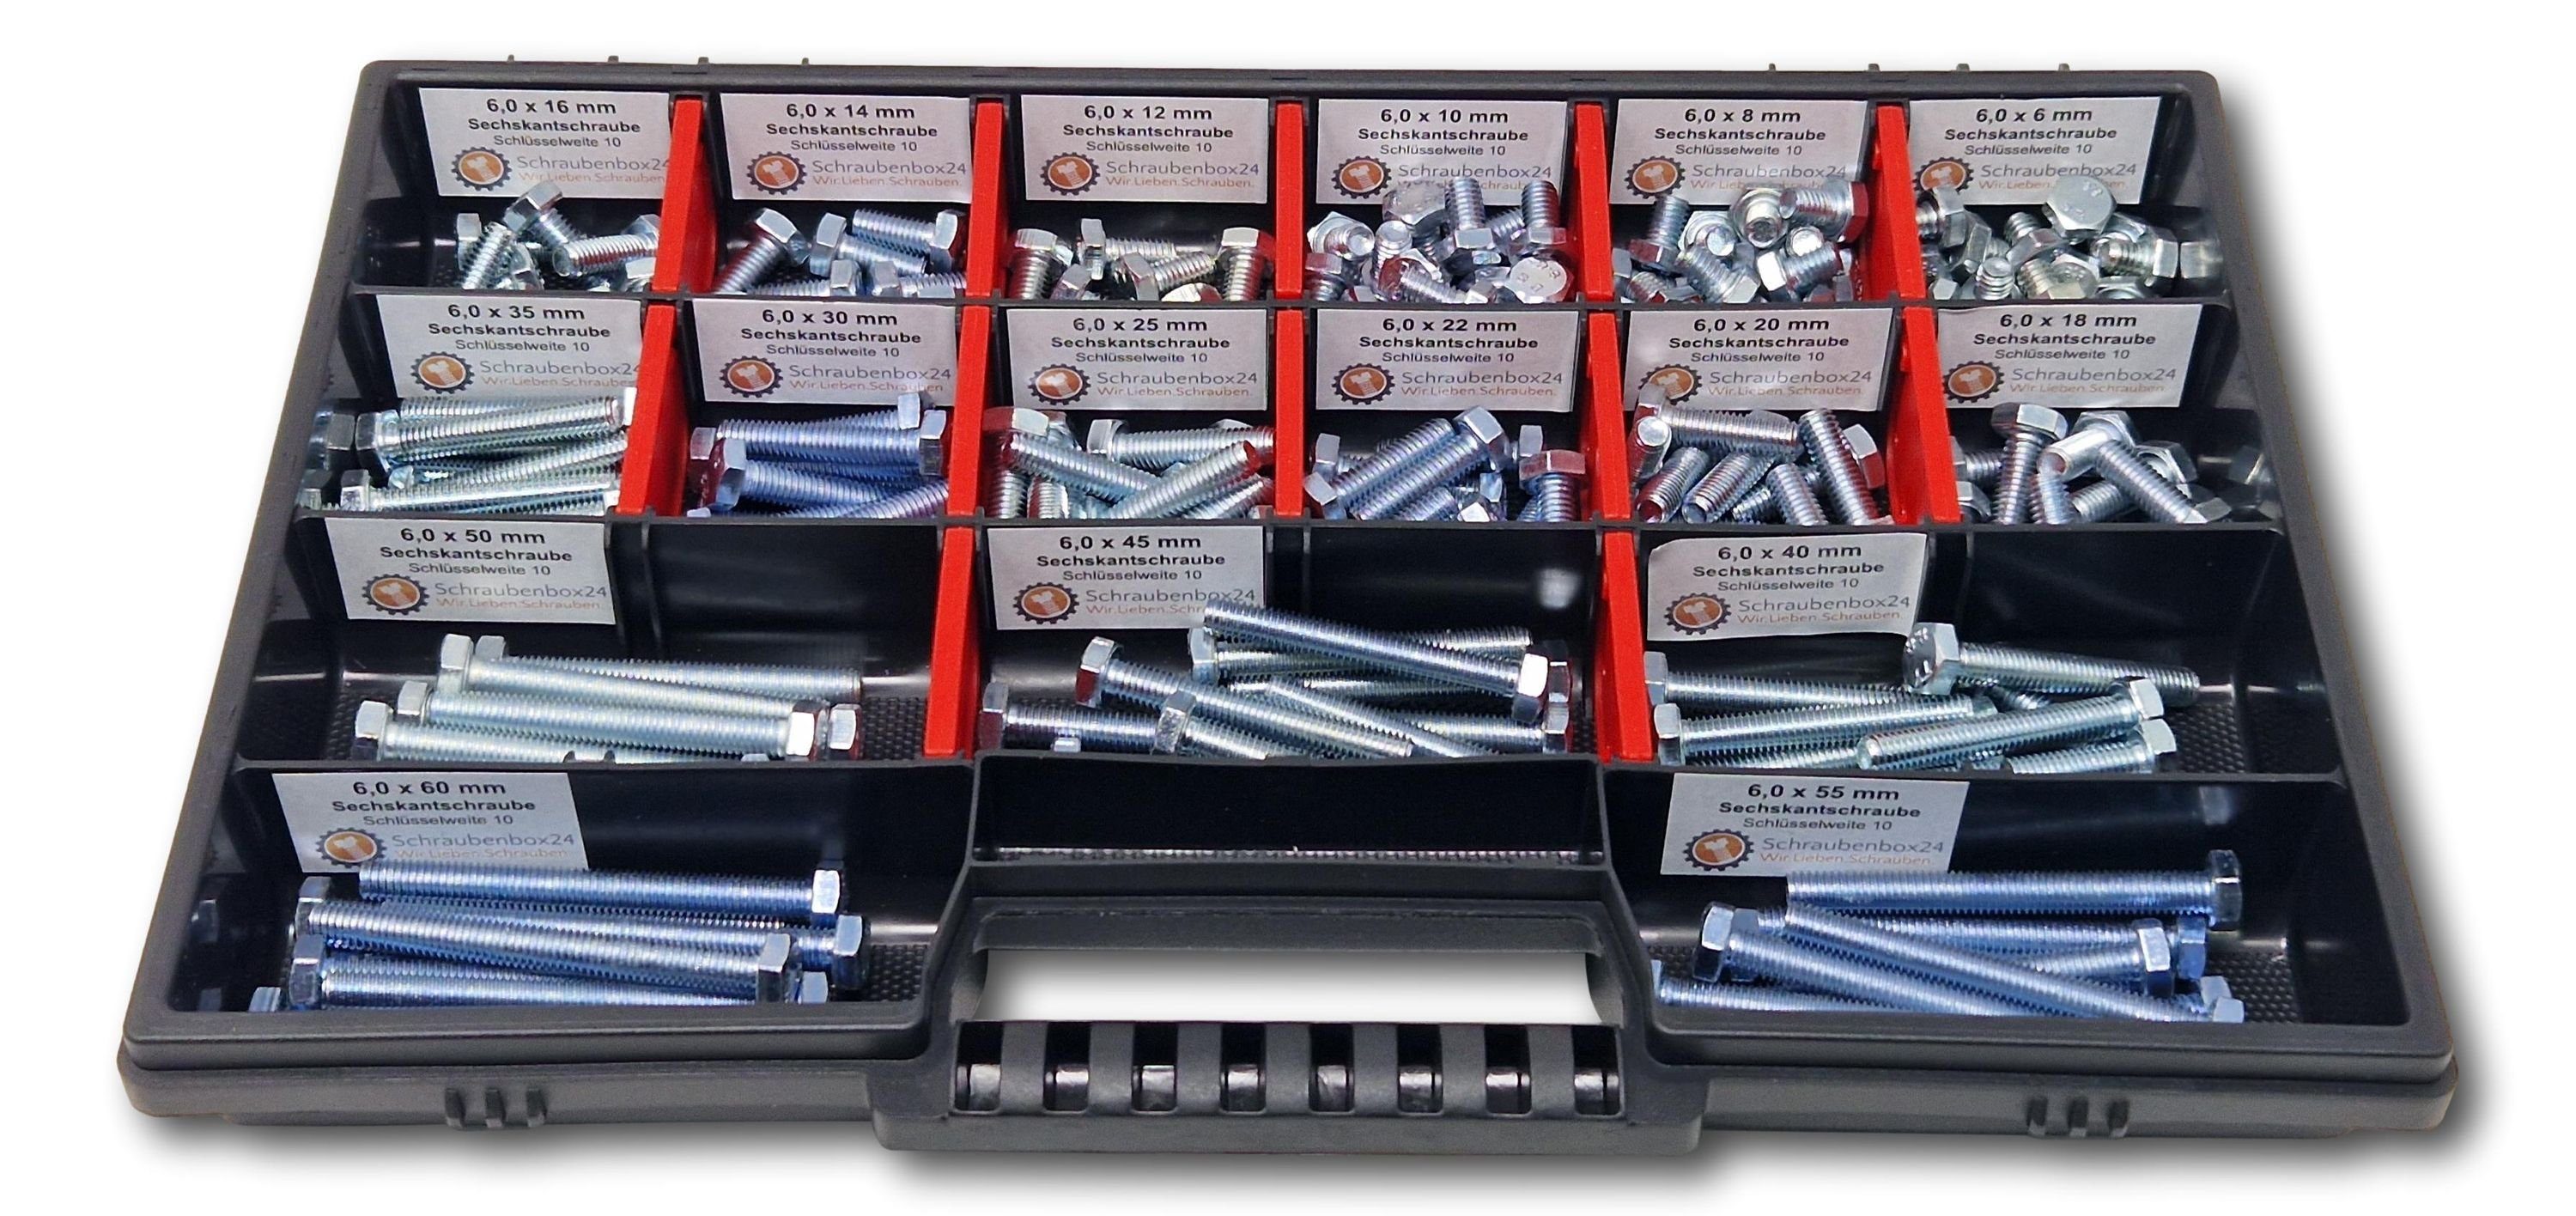 Schraubenbox24 Sechskantschraube Sortiment M6 // 6mm-60mm, (M-Box, 200 St., DIN 933,ISO 4017), 200 Stück Sechskantschrauben